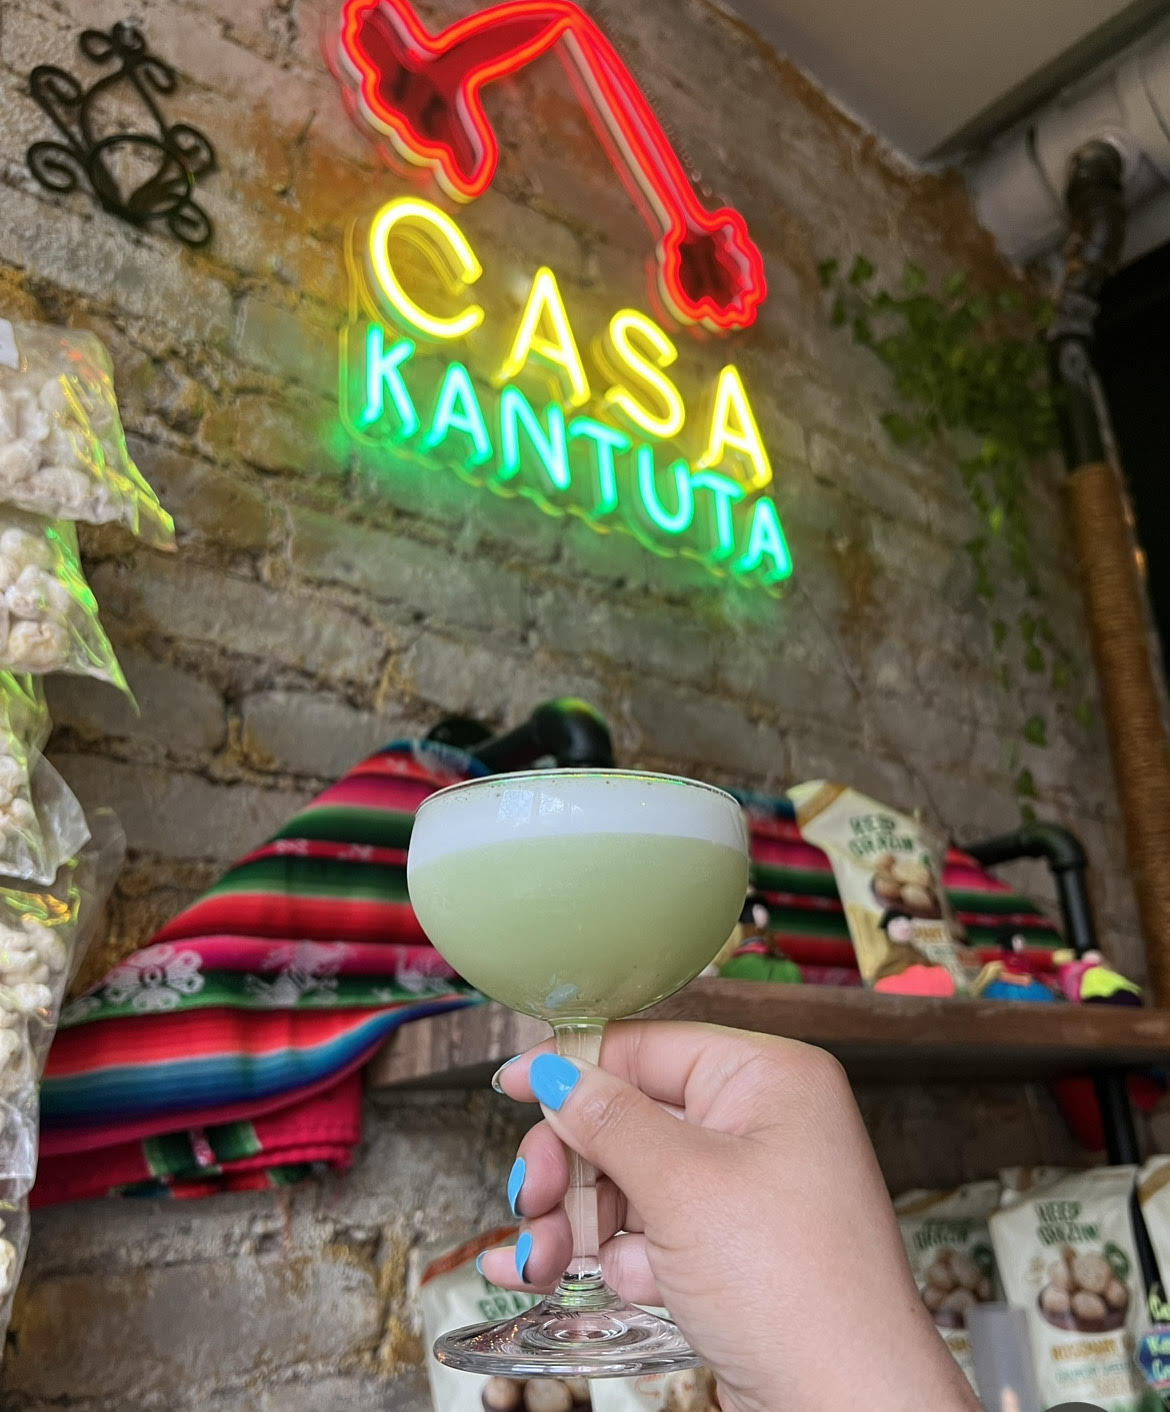 A drink at Casa Kuntata, a Bolivian bar in Washington, D.C.